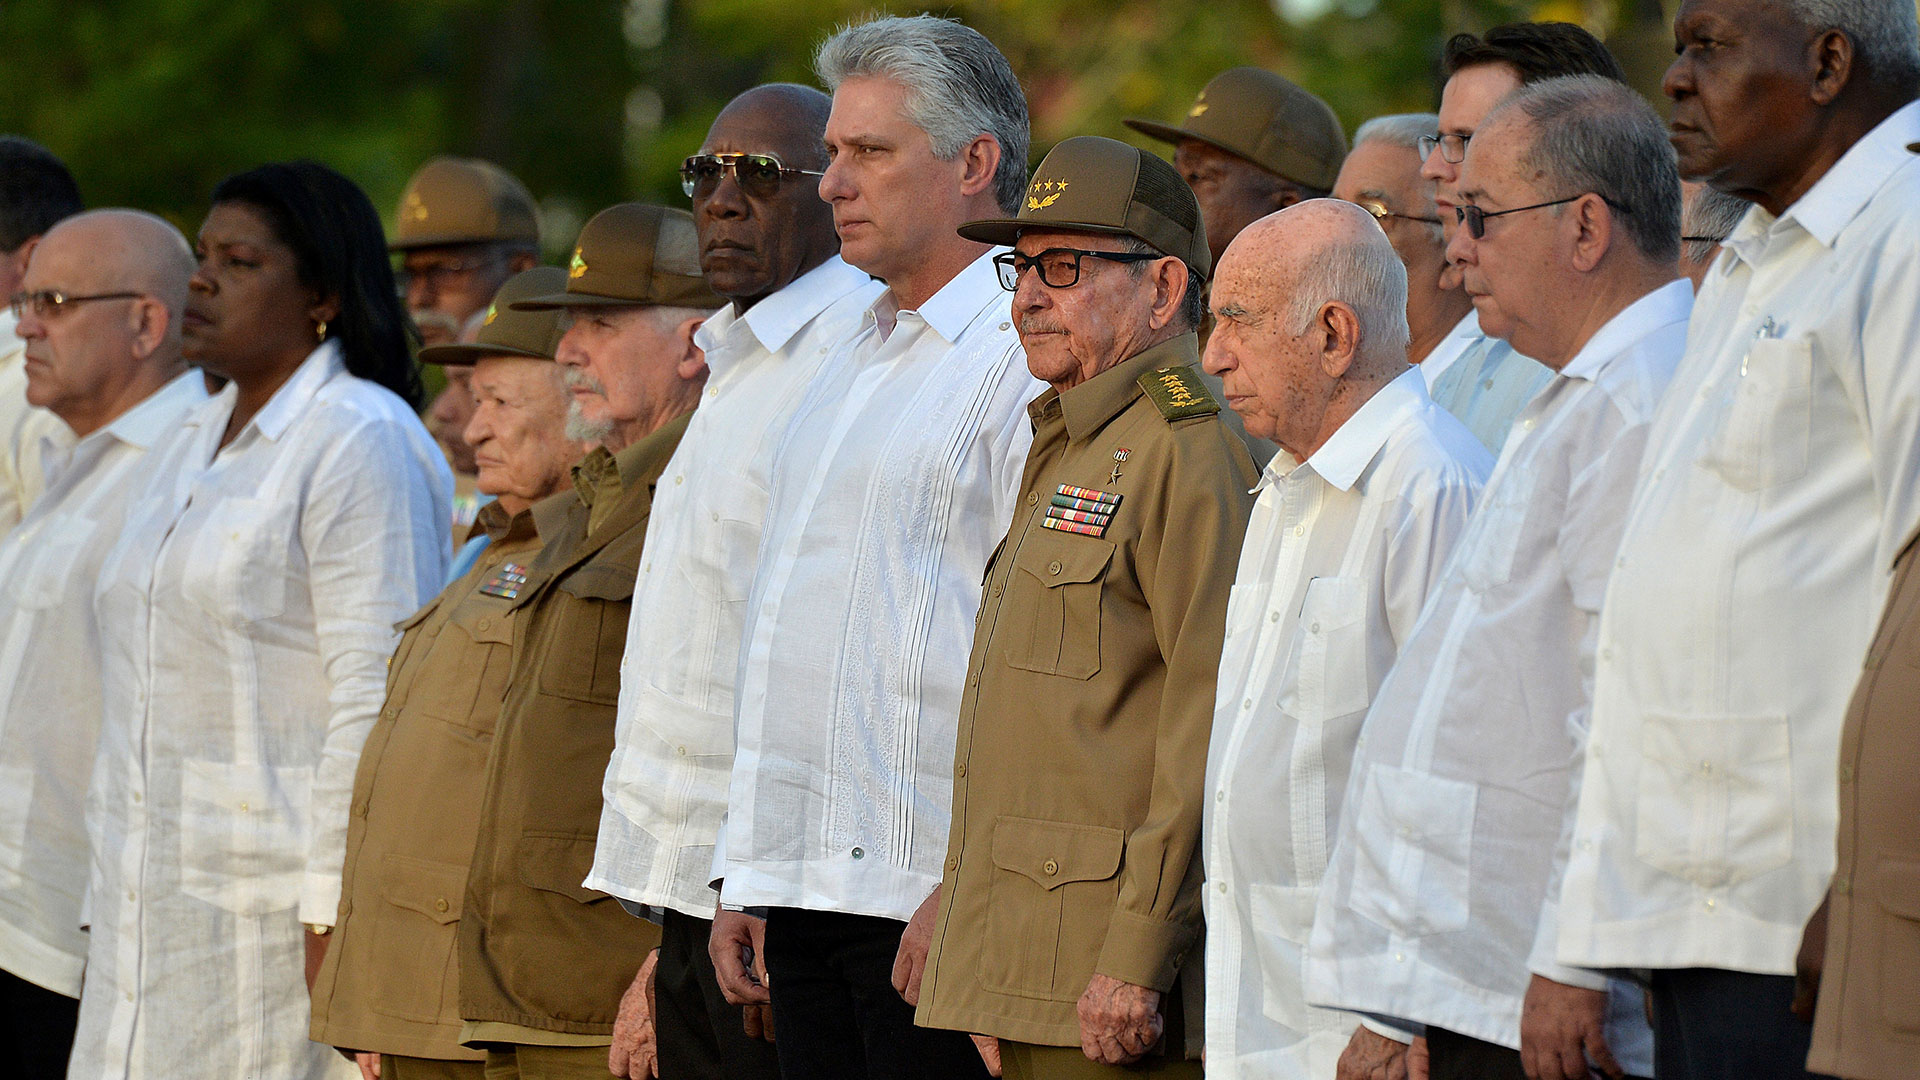 El presidente Miguel Díaz-Canel junto con su predecesor, y autoridad máxima del Partido Comunista Cubano, Raúl Castro, en la ceremonia del 60 aniversario. (Reuters)